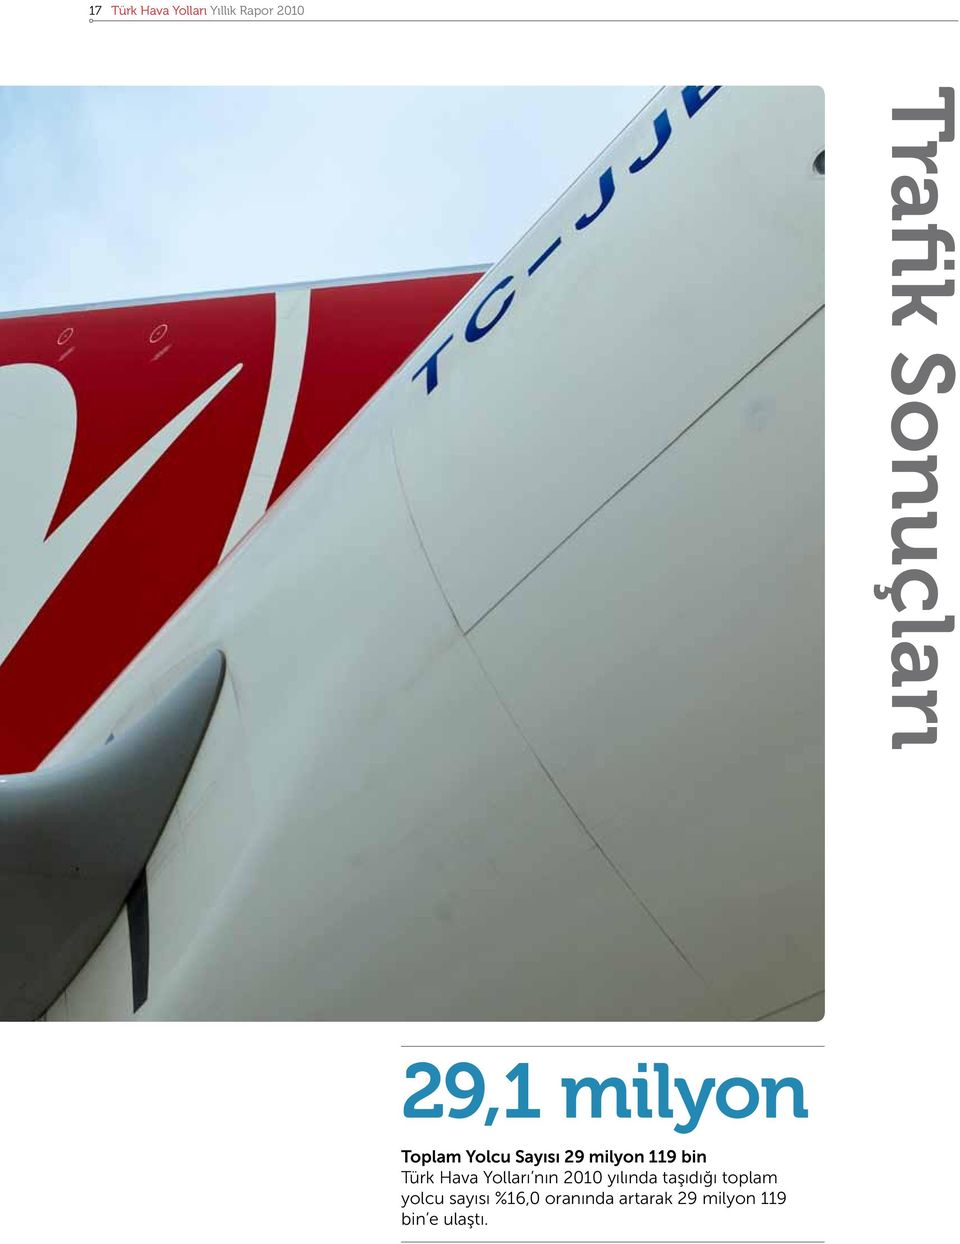 119 bin Türk Hava Yolları nın 2010 yılında taşıdığı